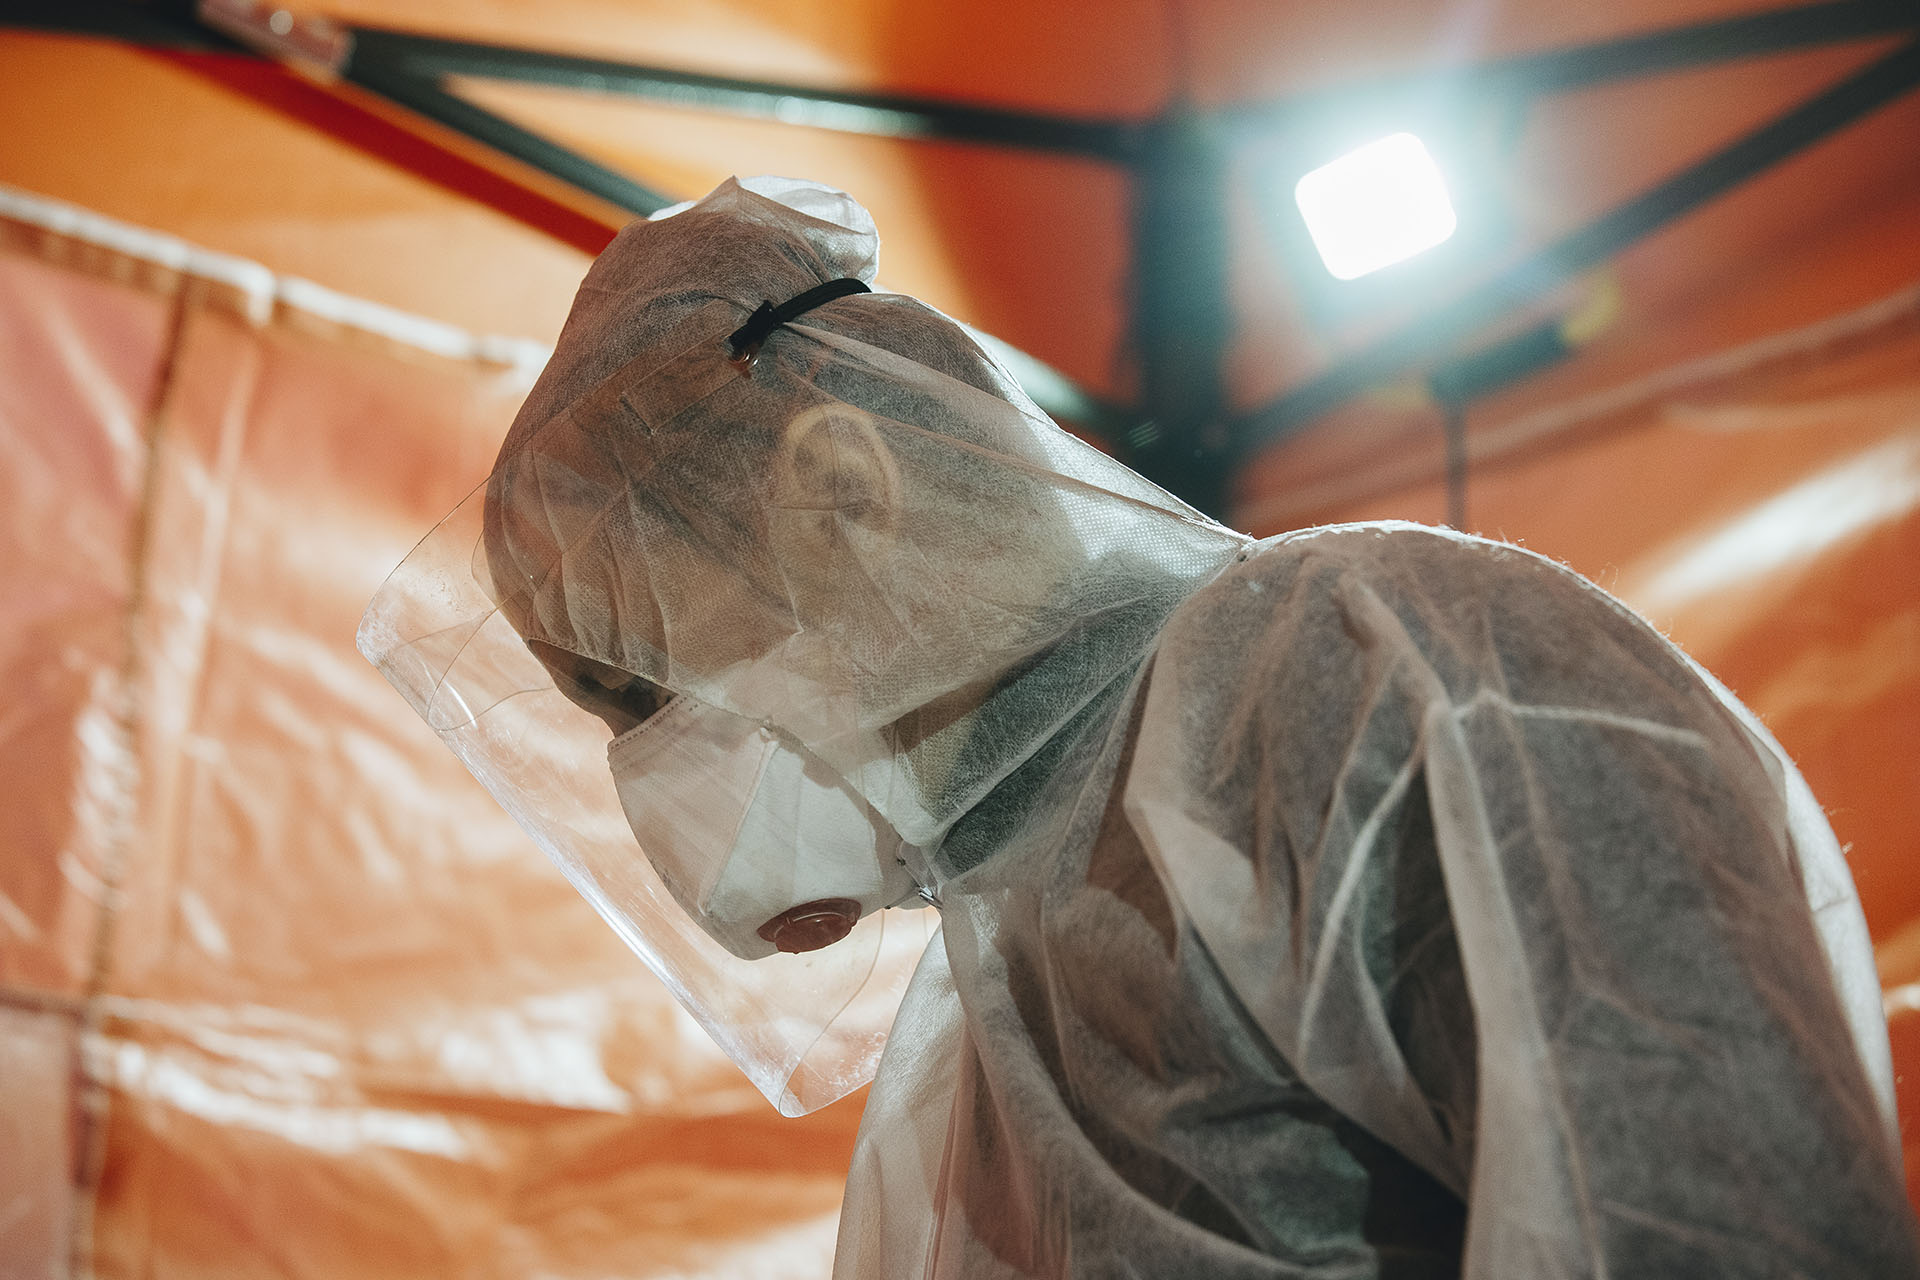 Újabb járványokra kell készülni – pandémiaegyezményt sürgetnek a nemzetközi szervezetek